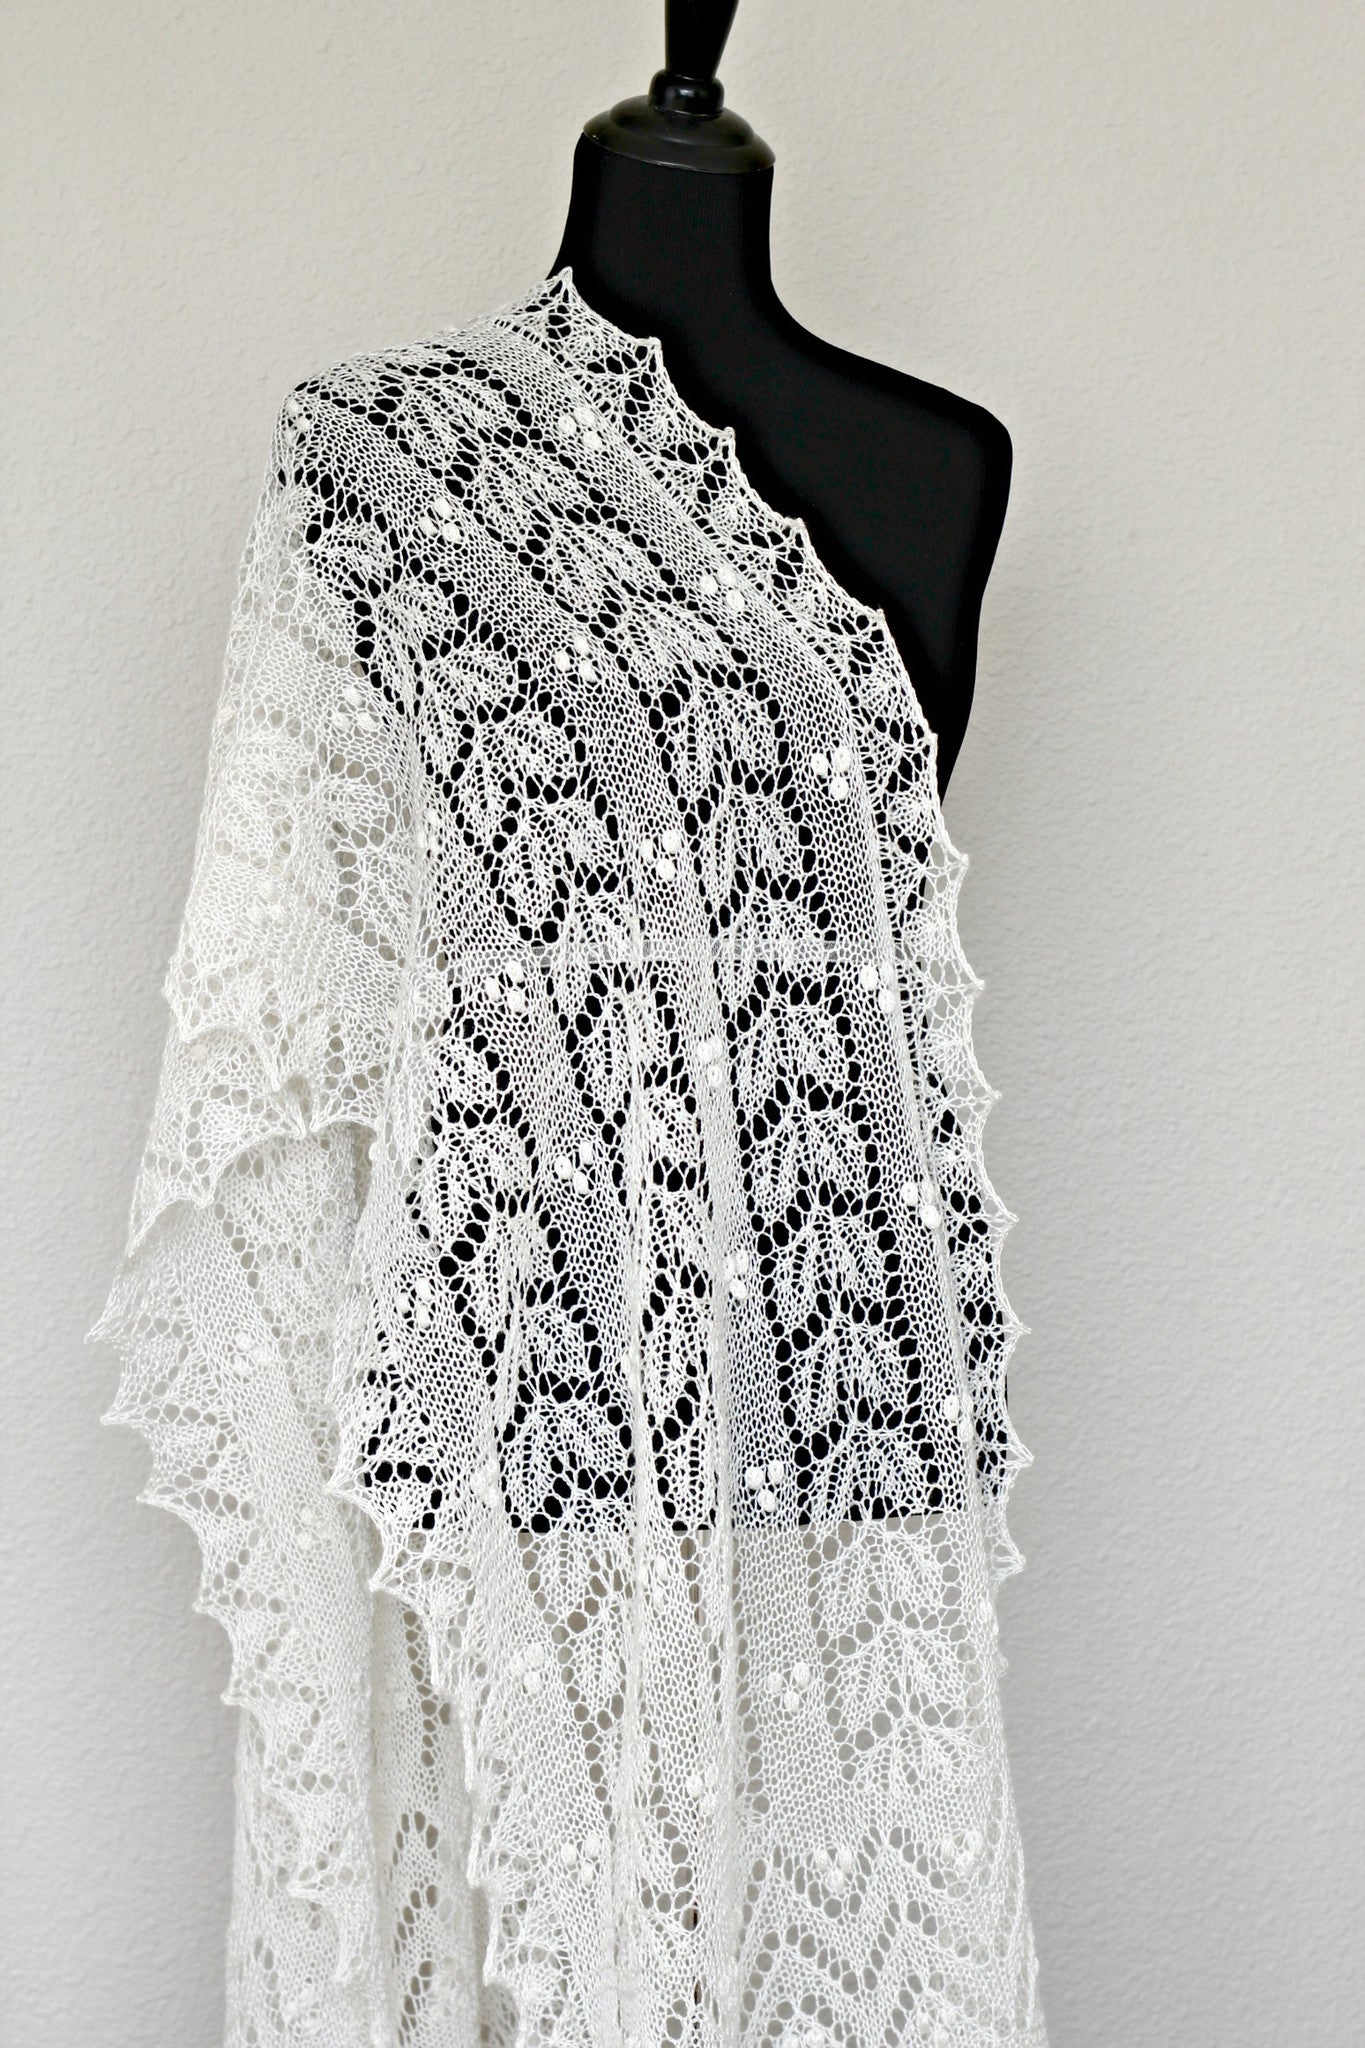 Wedding shawl, bridal shawl, lace shawl in ivory color